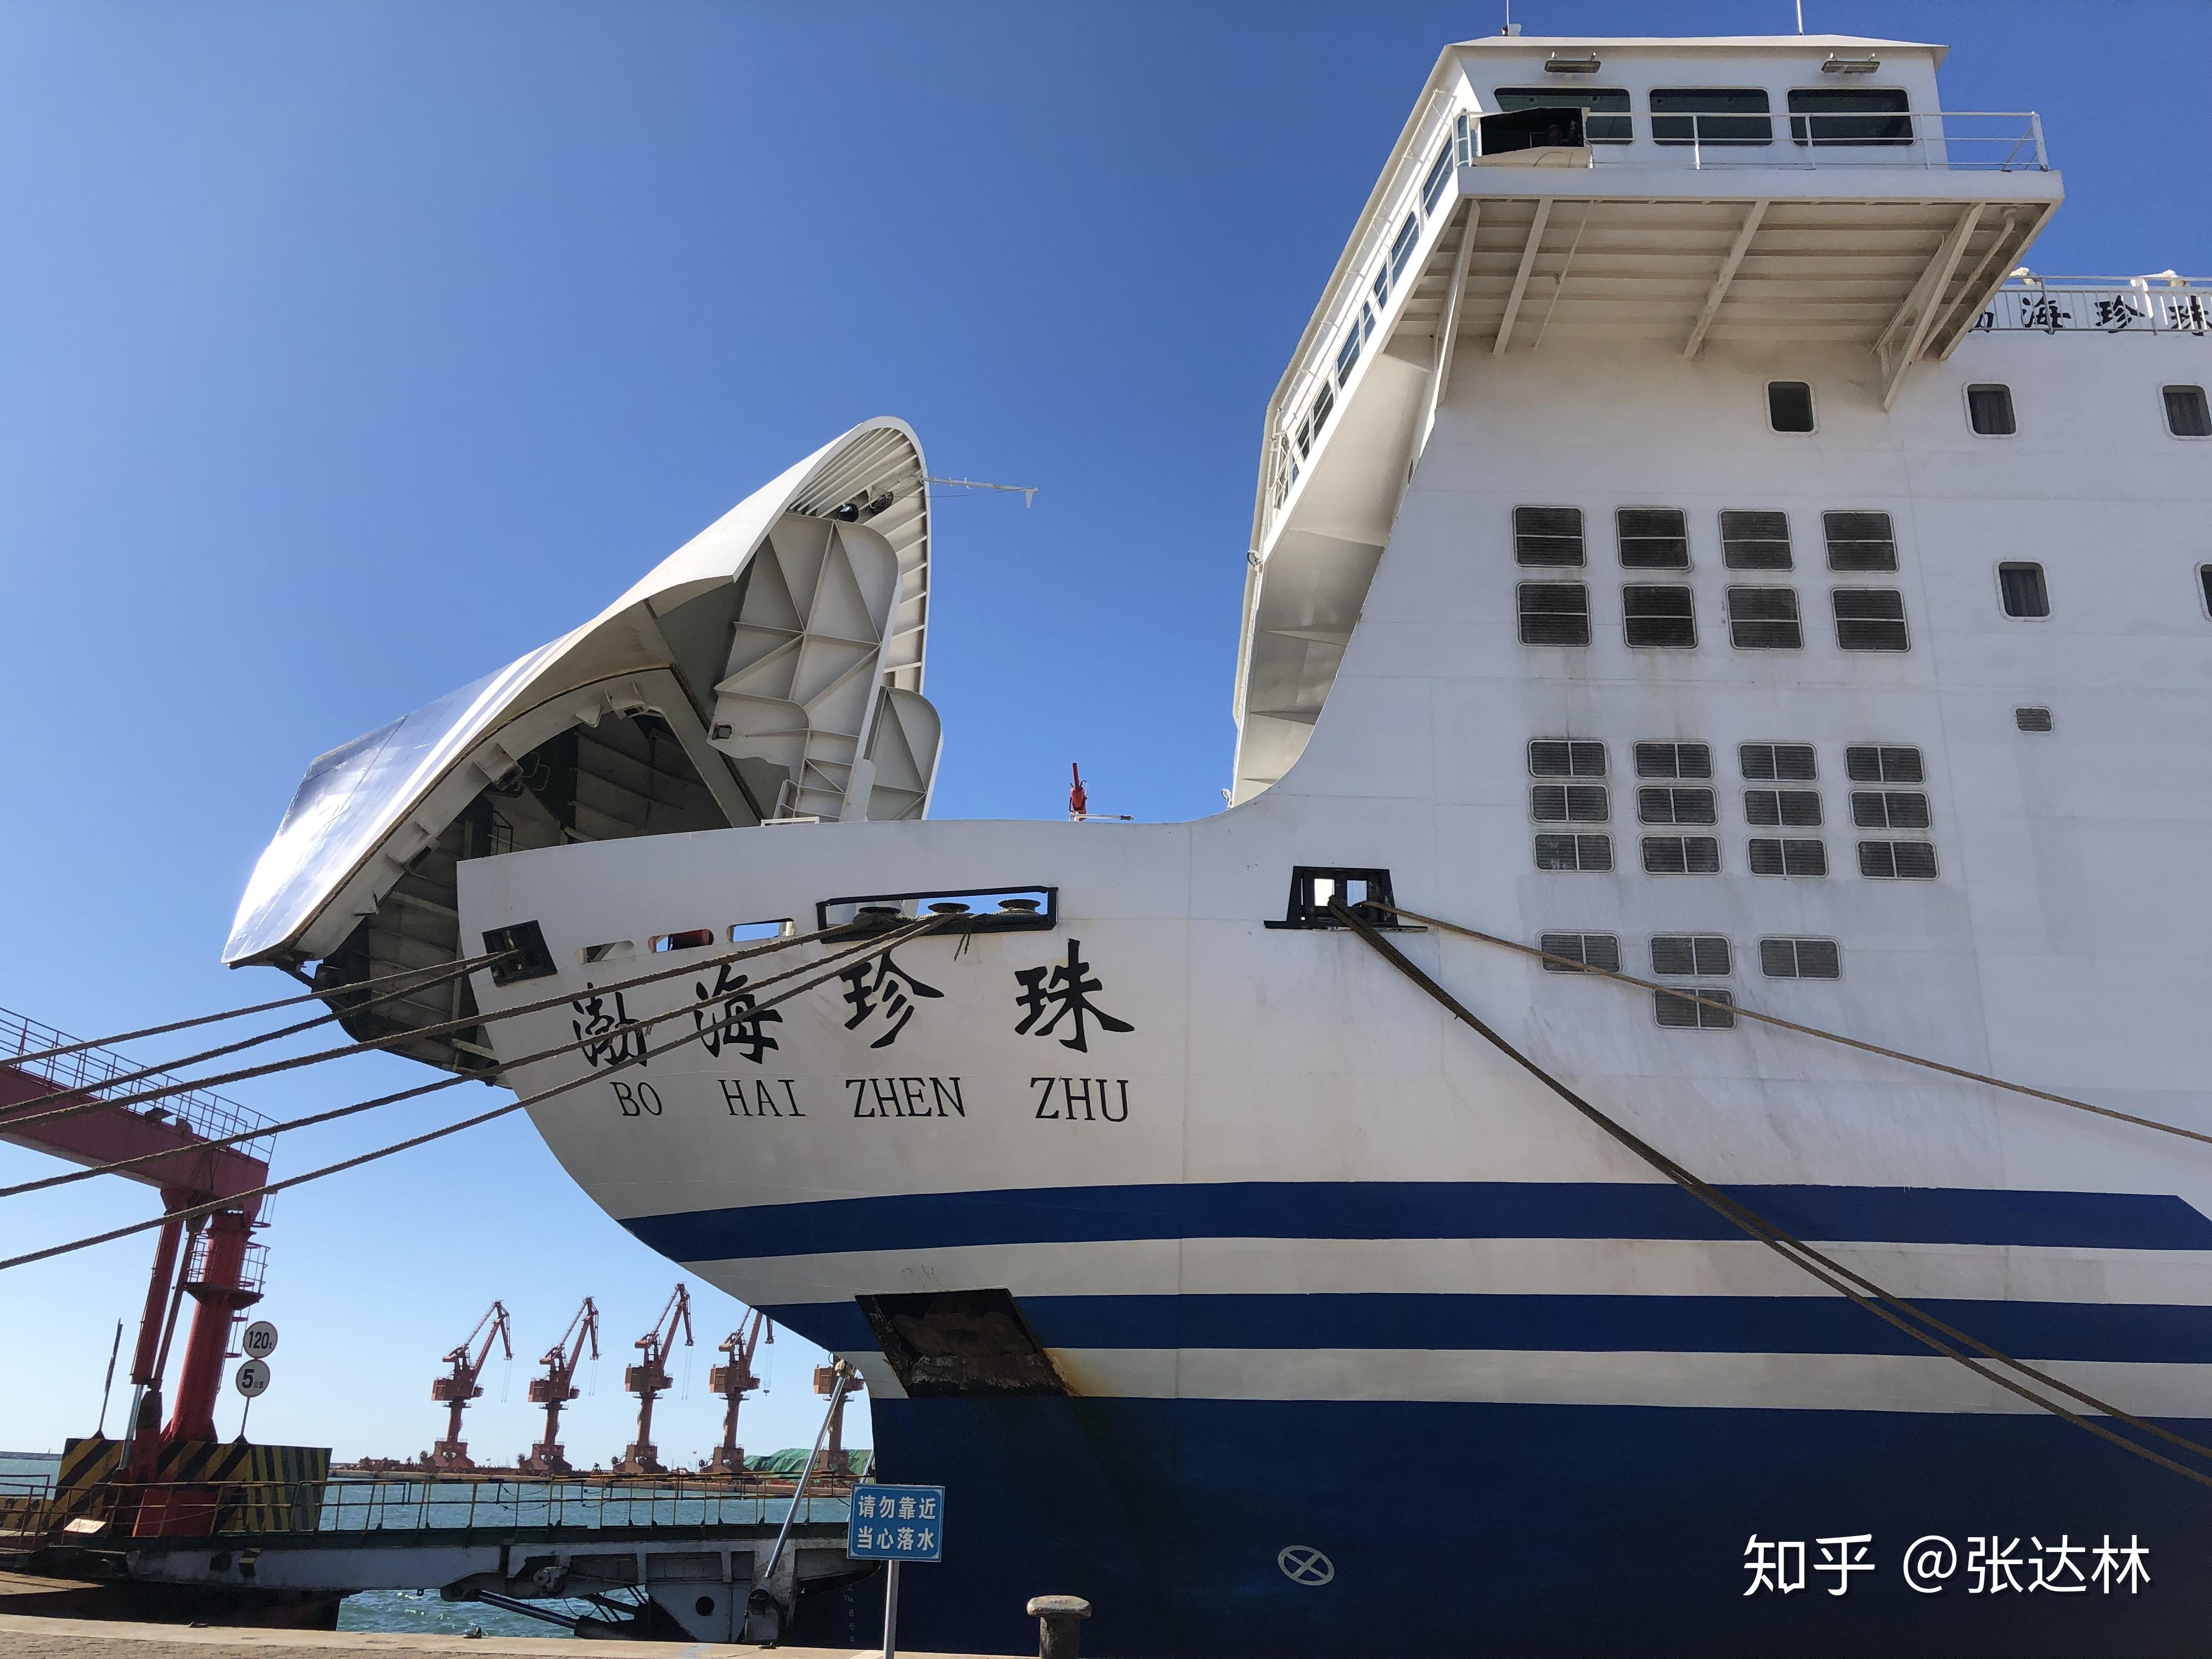 【携程攻略】渤海轮渡，渤海轮渡往返于烟台和大连之间，是客货混装船，条件非常好，对于自驾…